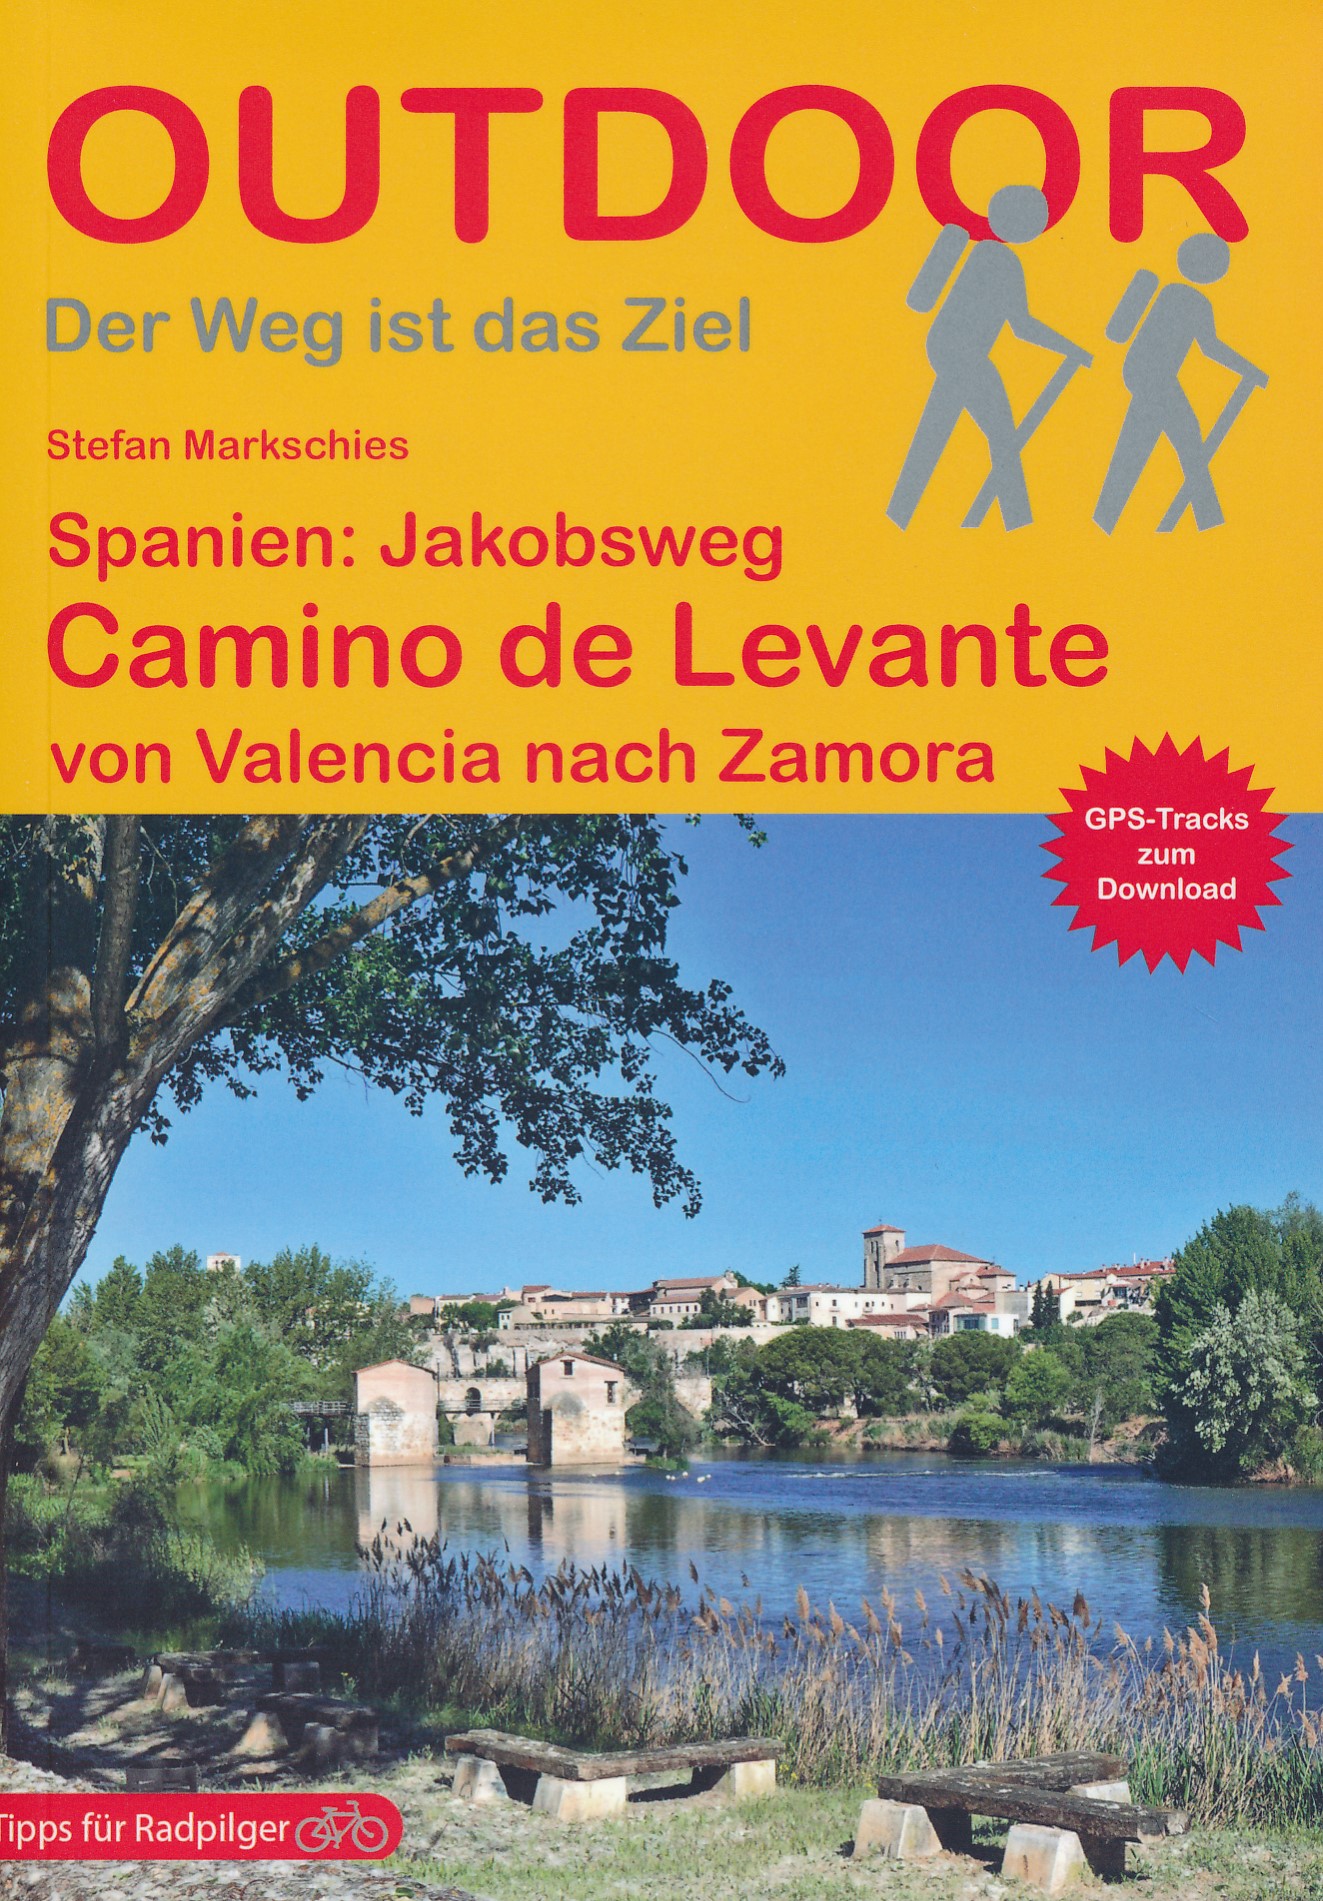 Online bestellen: Wandelgids - Pelgrimsroute 271 Camino de Levante - Jakobsweg | Conrad Stein Verlag